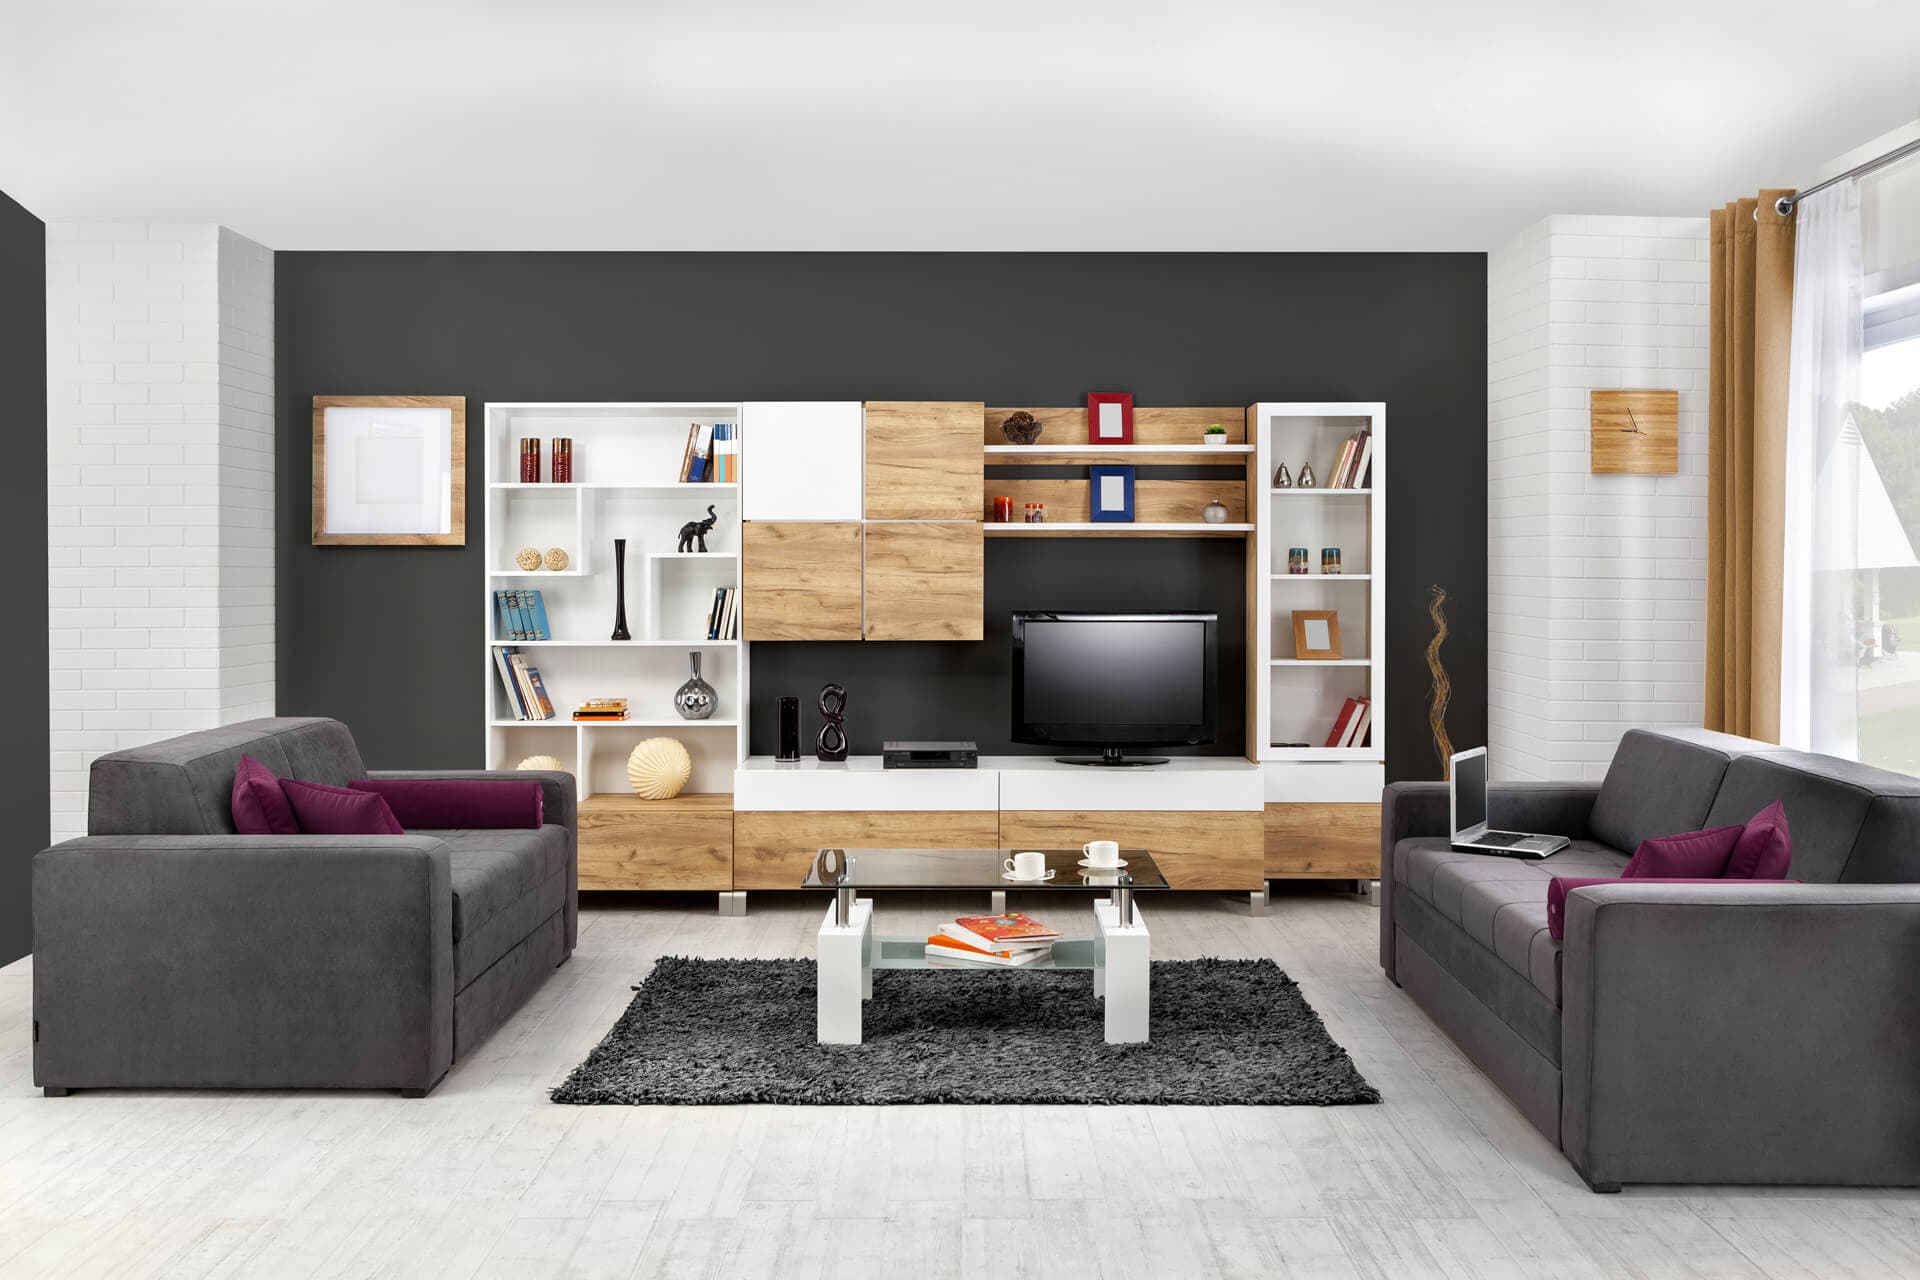 Amplia variedad de mobiliario para personalizar su estancia